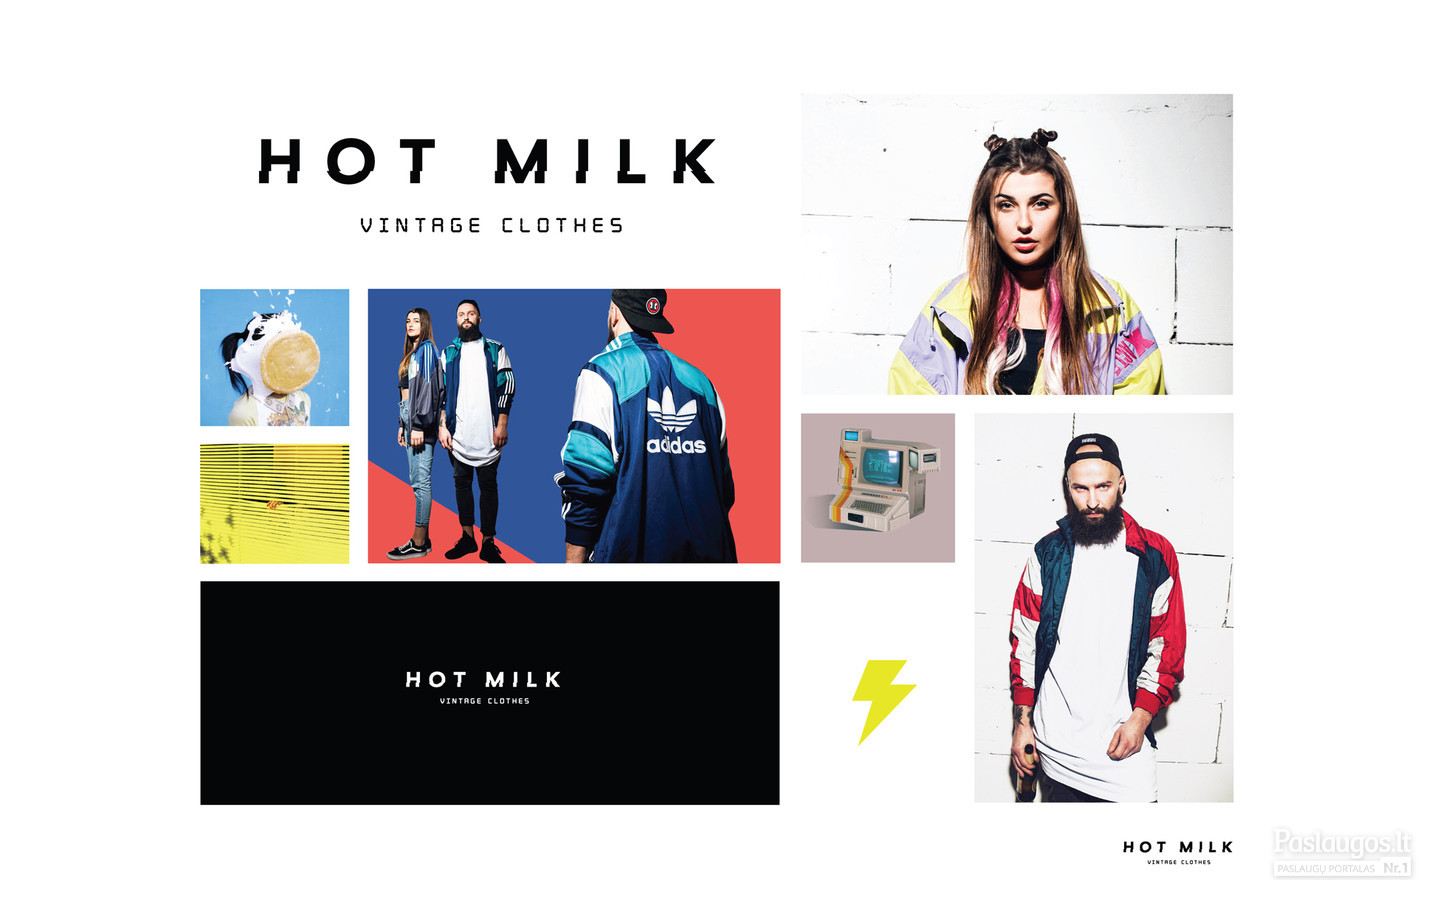 HOT MILK Vintage Clothes logotipas
Facebook: Hot Milk Vintage Clothes